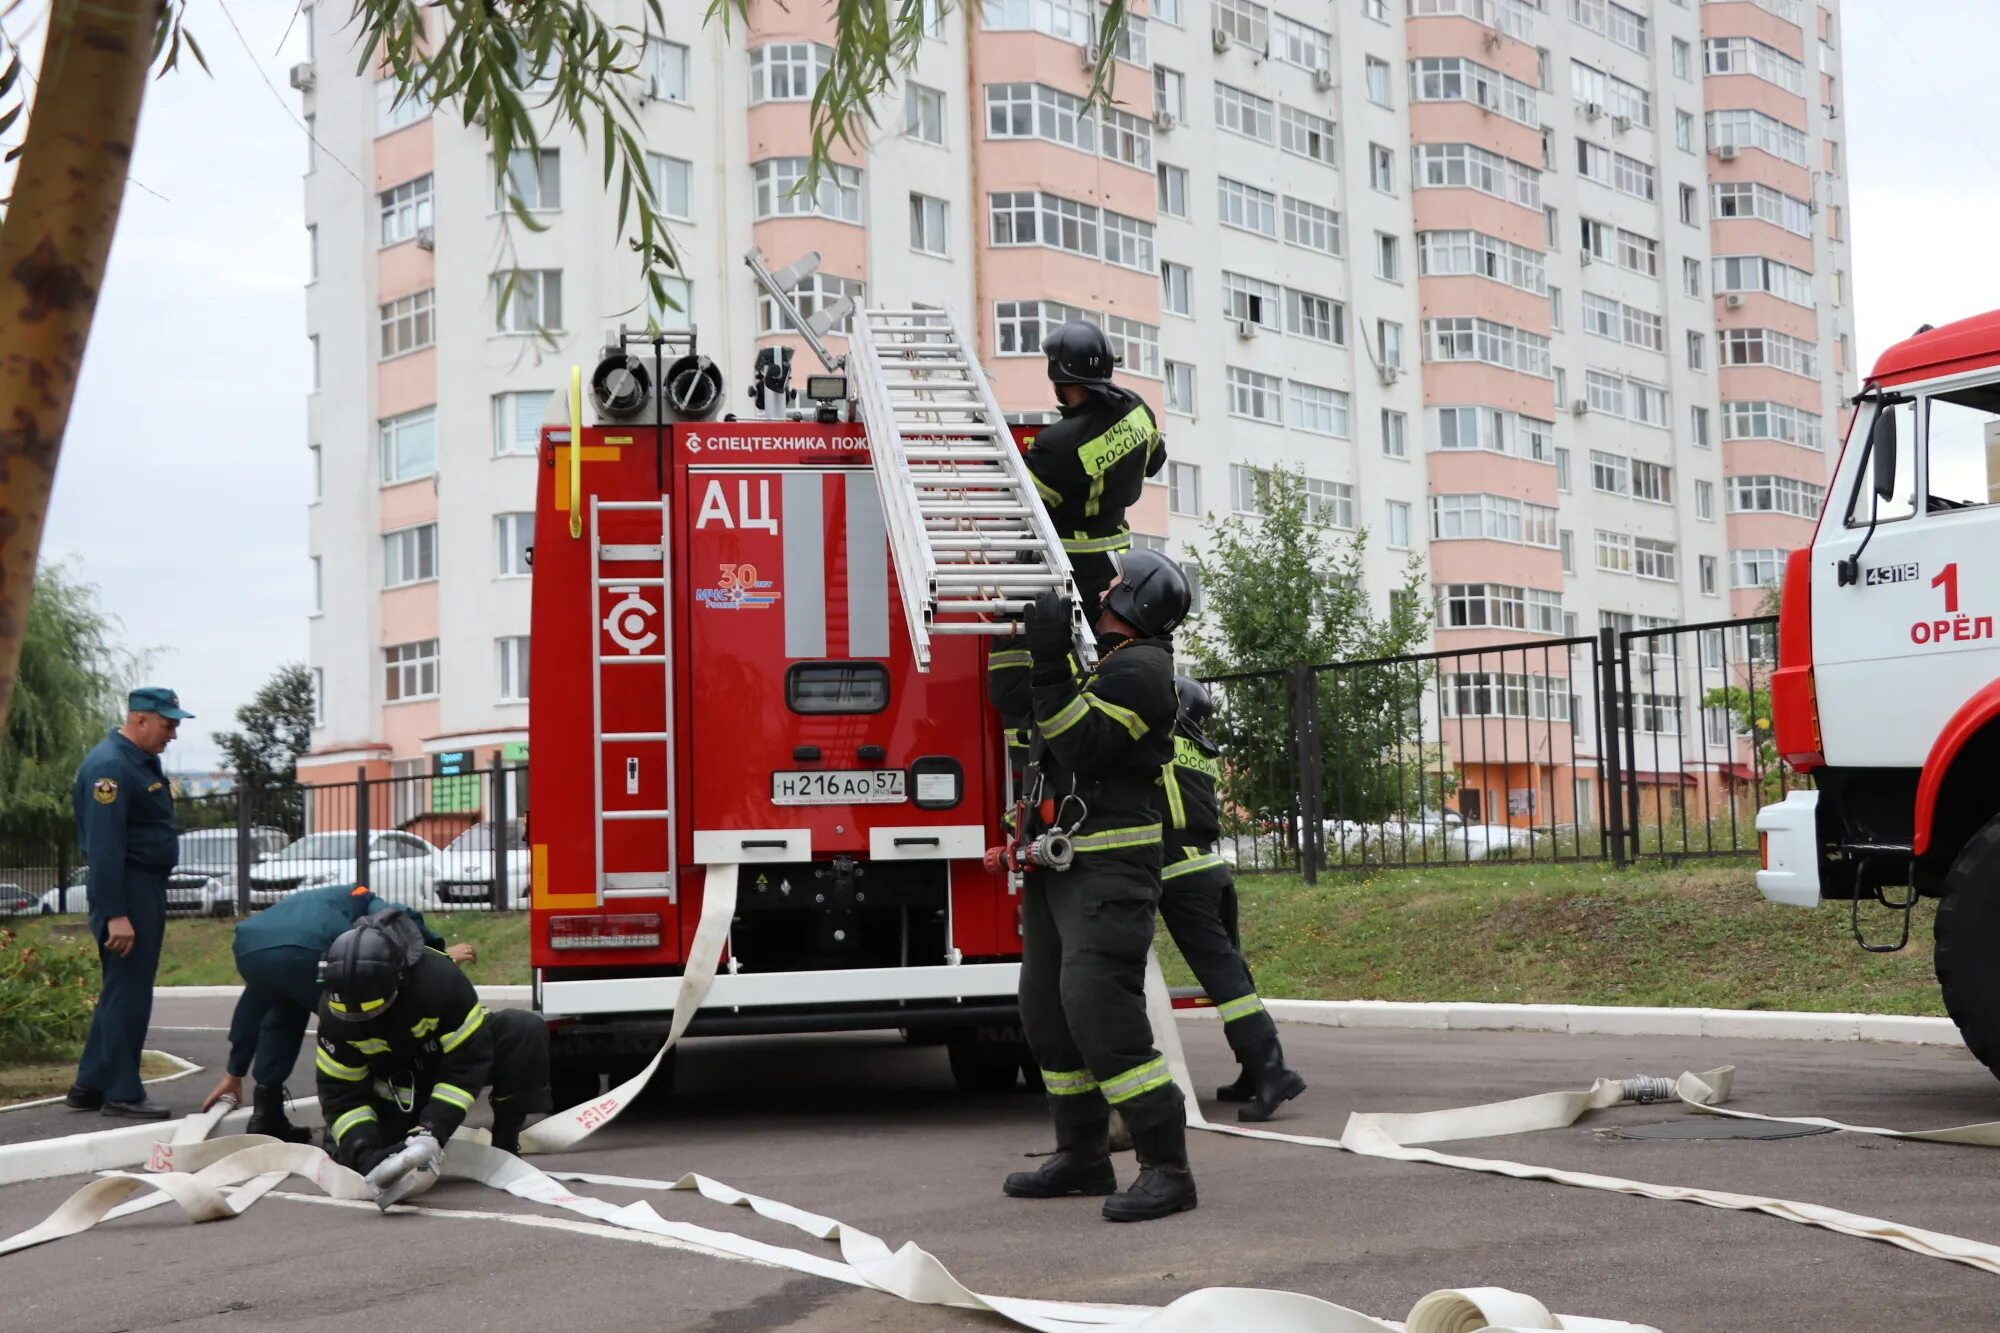 Последние новости в орле на сегодня. Пожарно-спасательный. Пожарные России. Фото пожарных. МЧС Орел пожар.